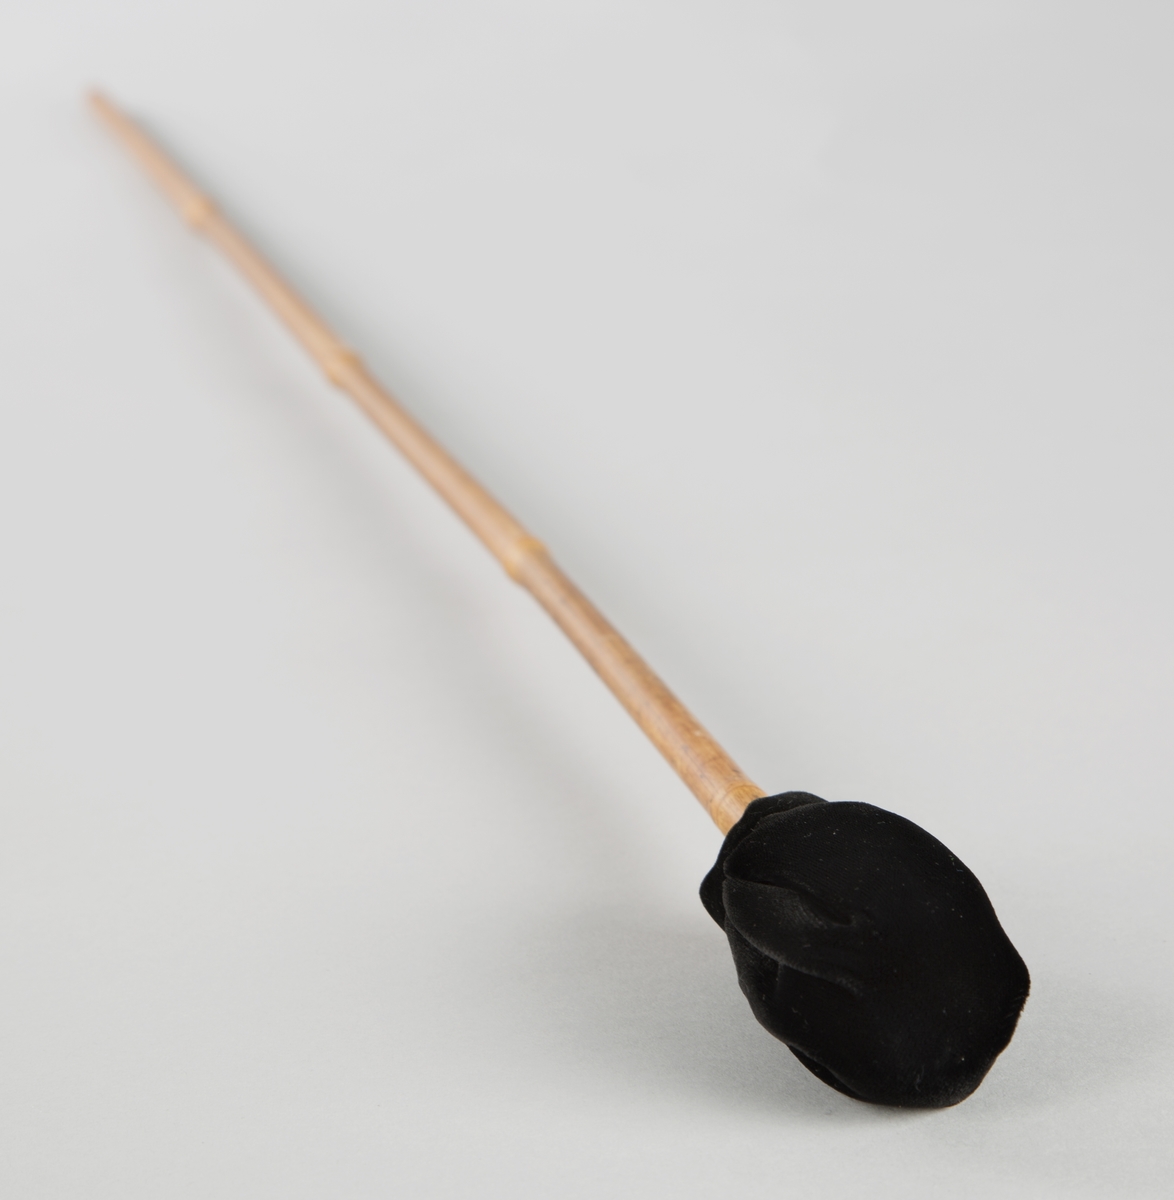 Stikke av bambus, med polstret tupp. Stikken brukes til å spille på eolsklokkene.